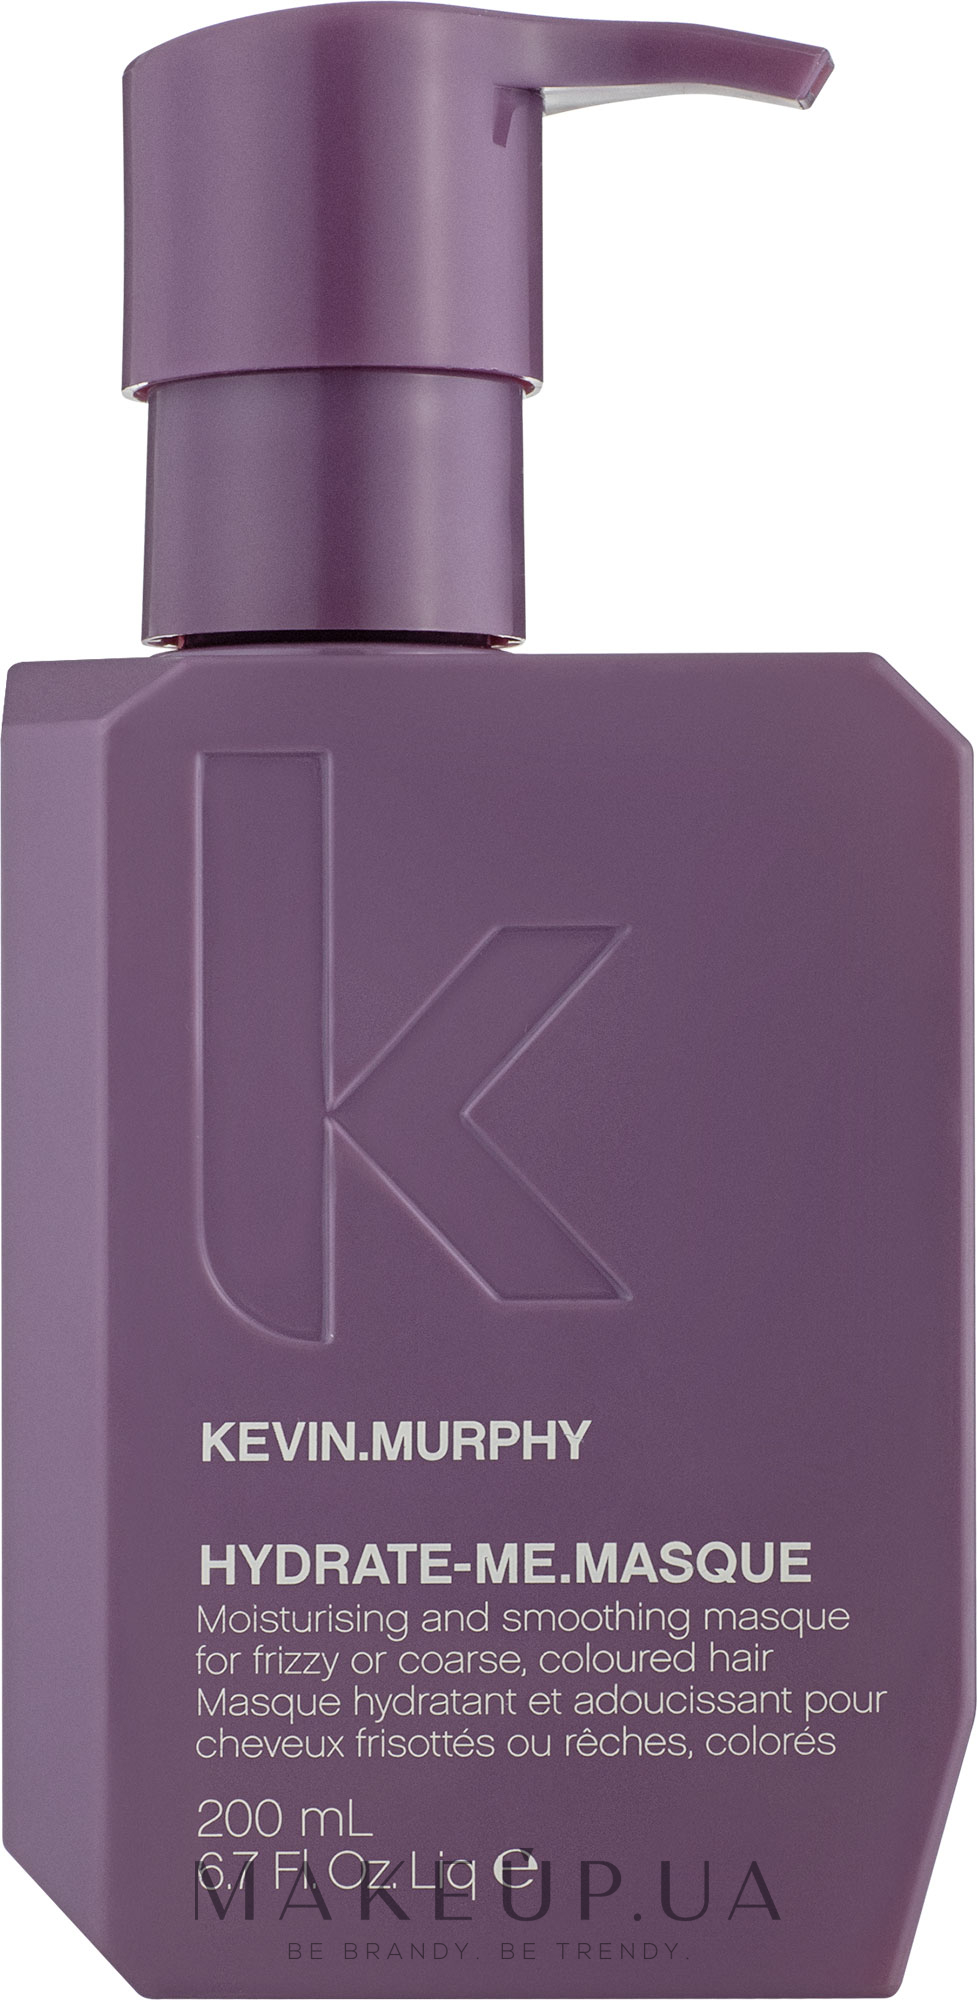 Маска для інтенсивного зволоження волосся - Kevin Murphy Hydrate-Me.Masque — фото 200ml